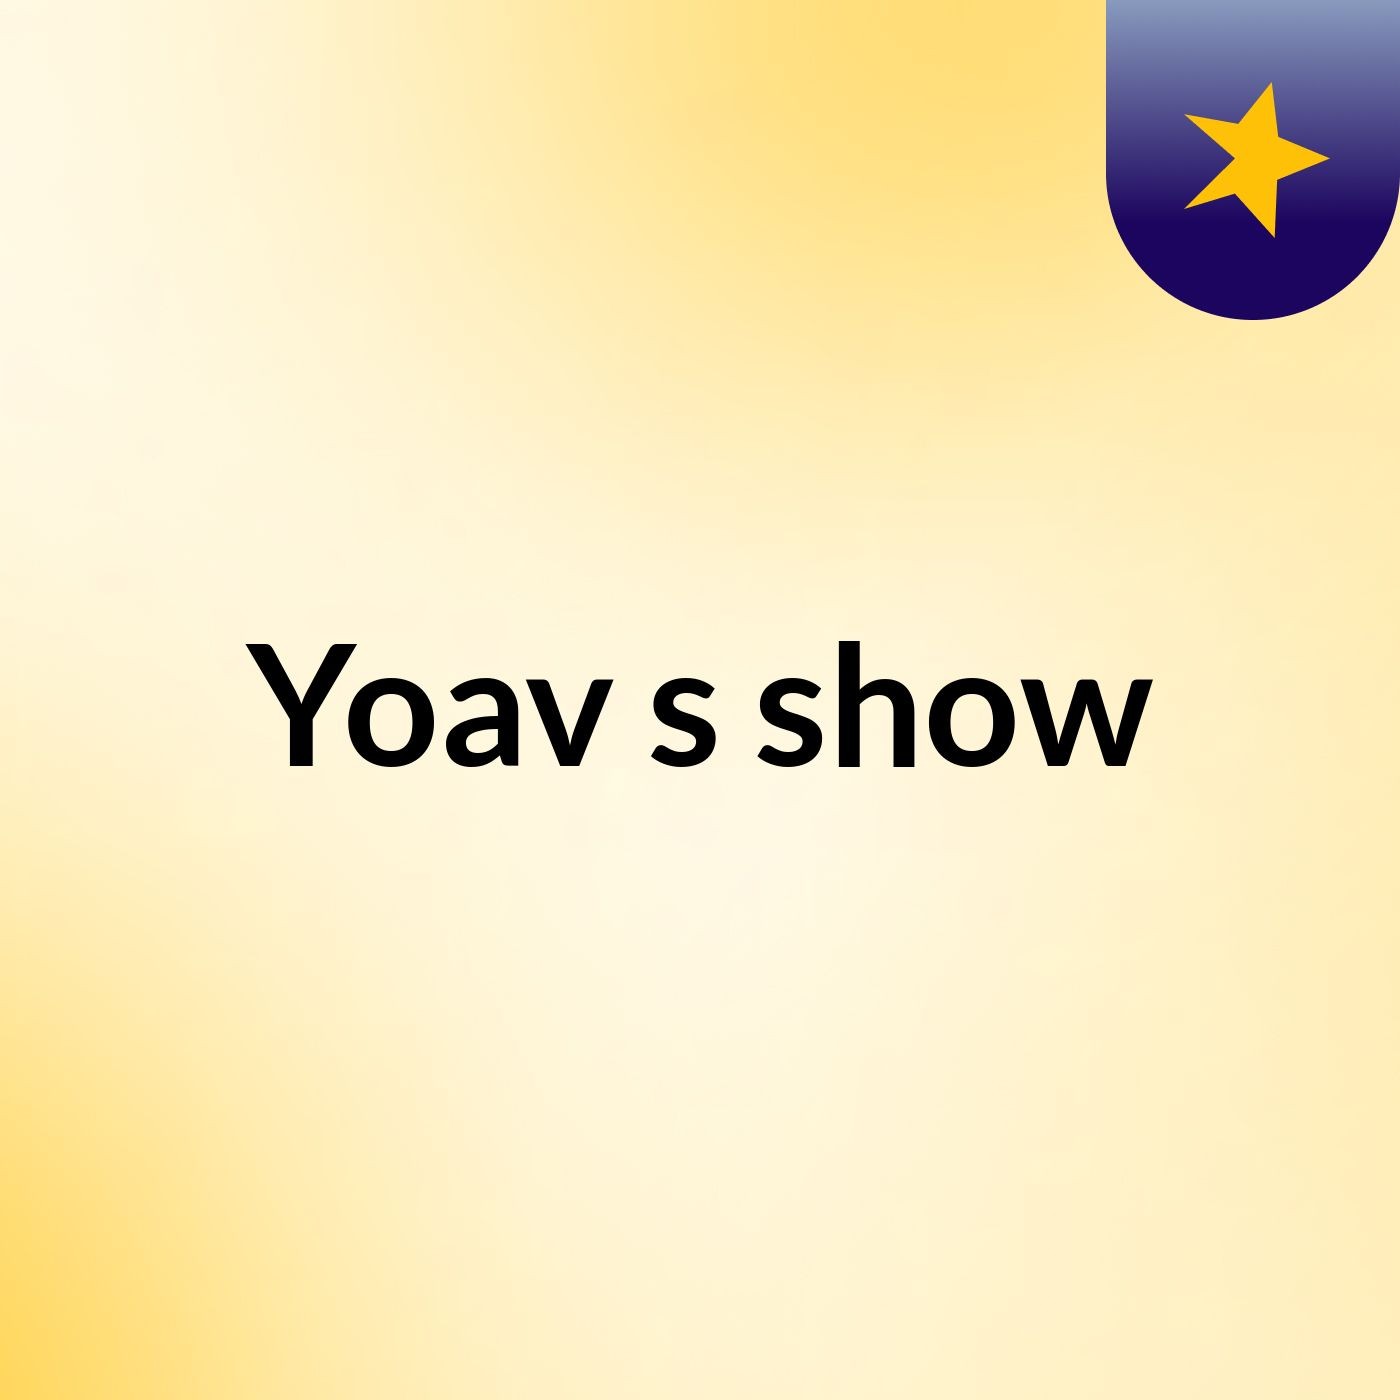 Yoav's show